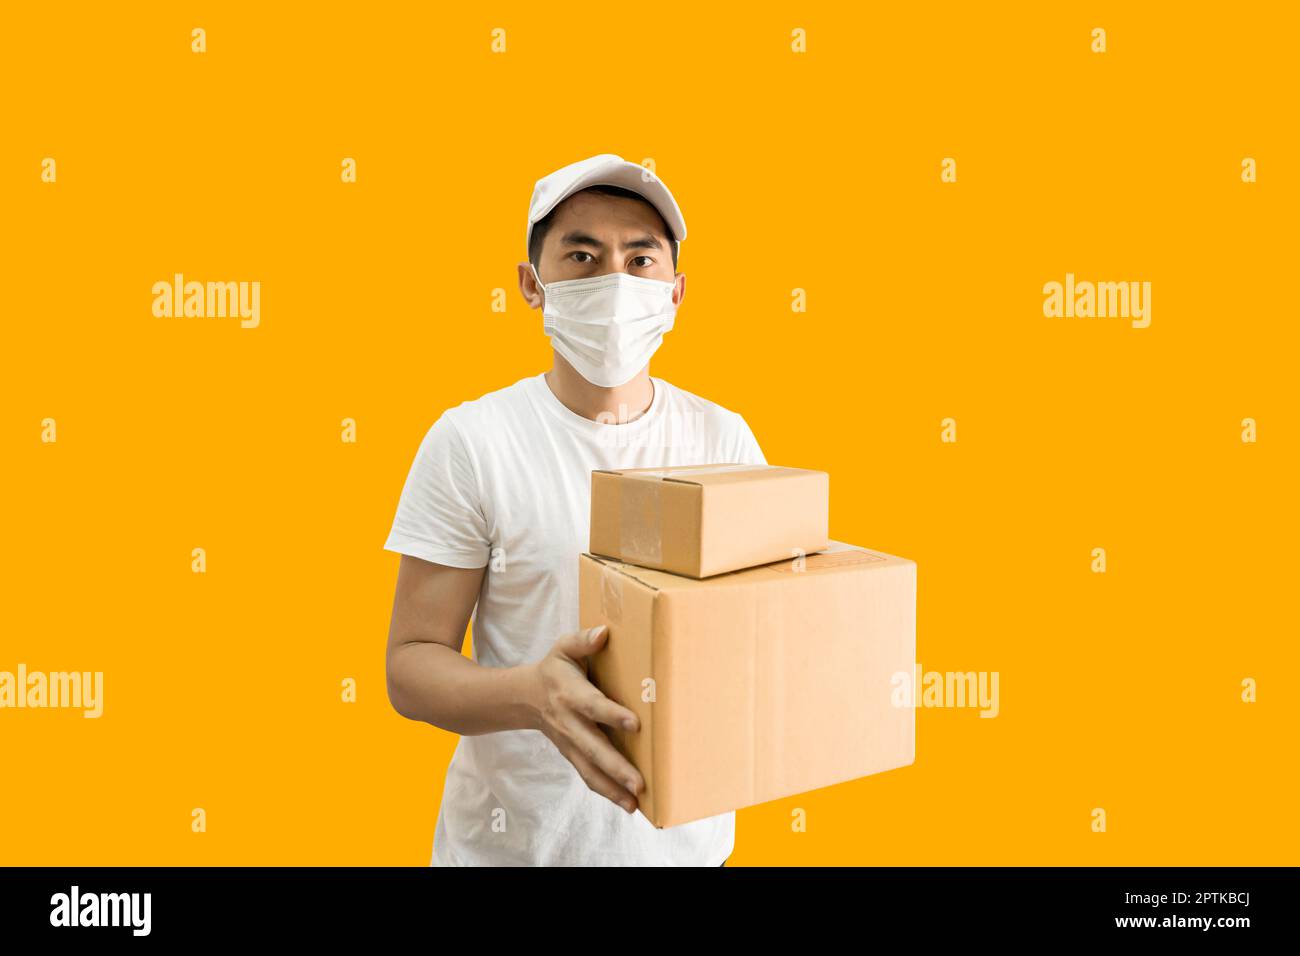 Giovane uomo asiatico con berretto e t-shirt bianca vuota che tiene la cassetta postale isolata su sfondo giallo. Servizio di consegna espresso. Foto Stock